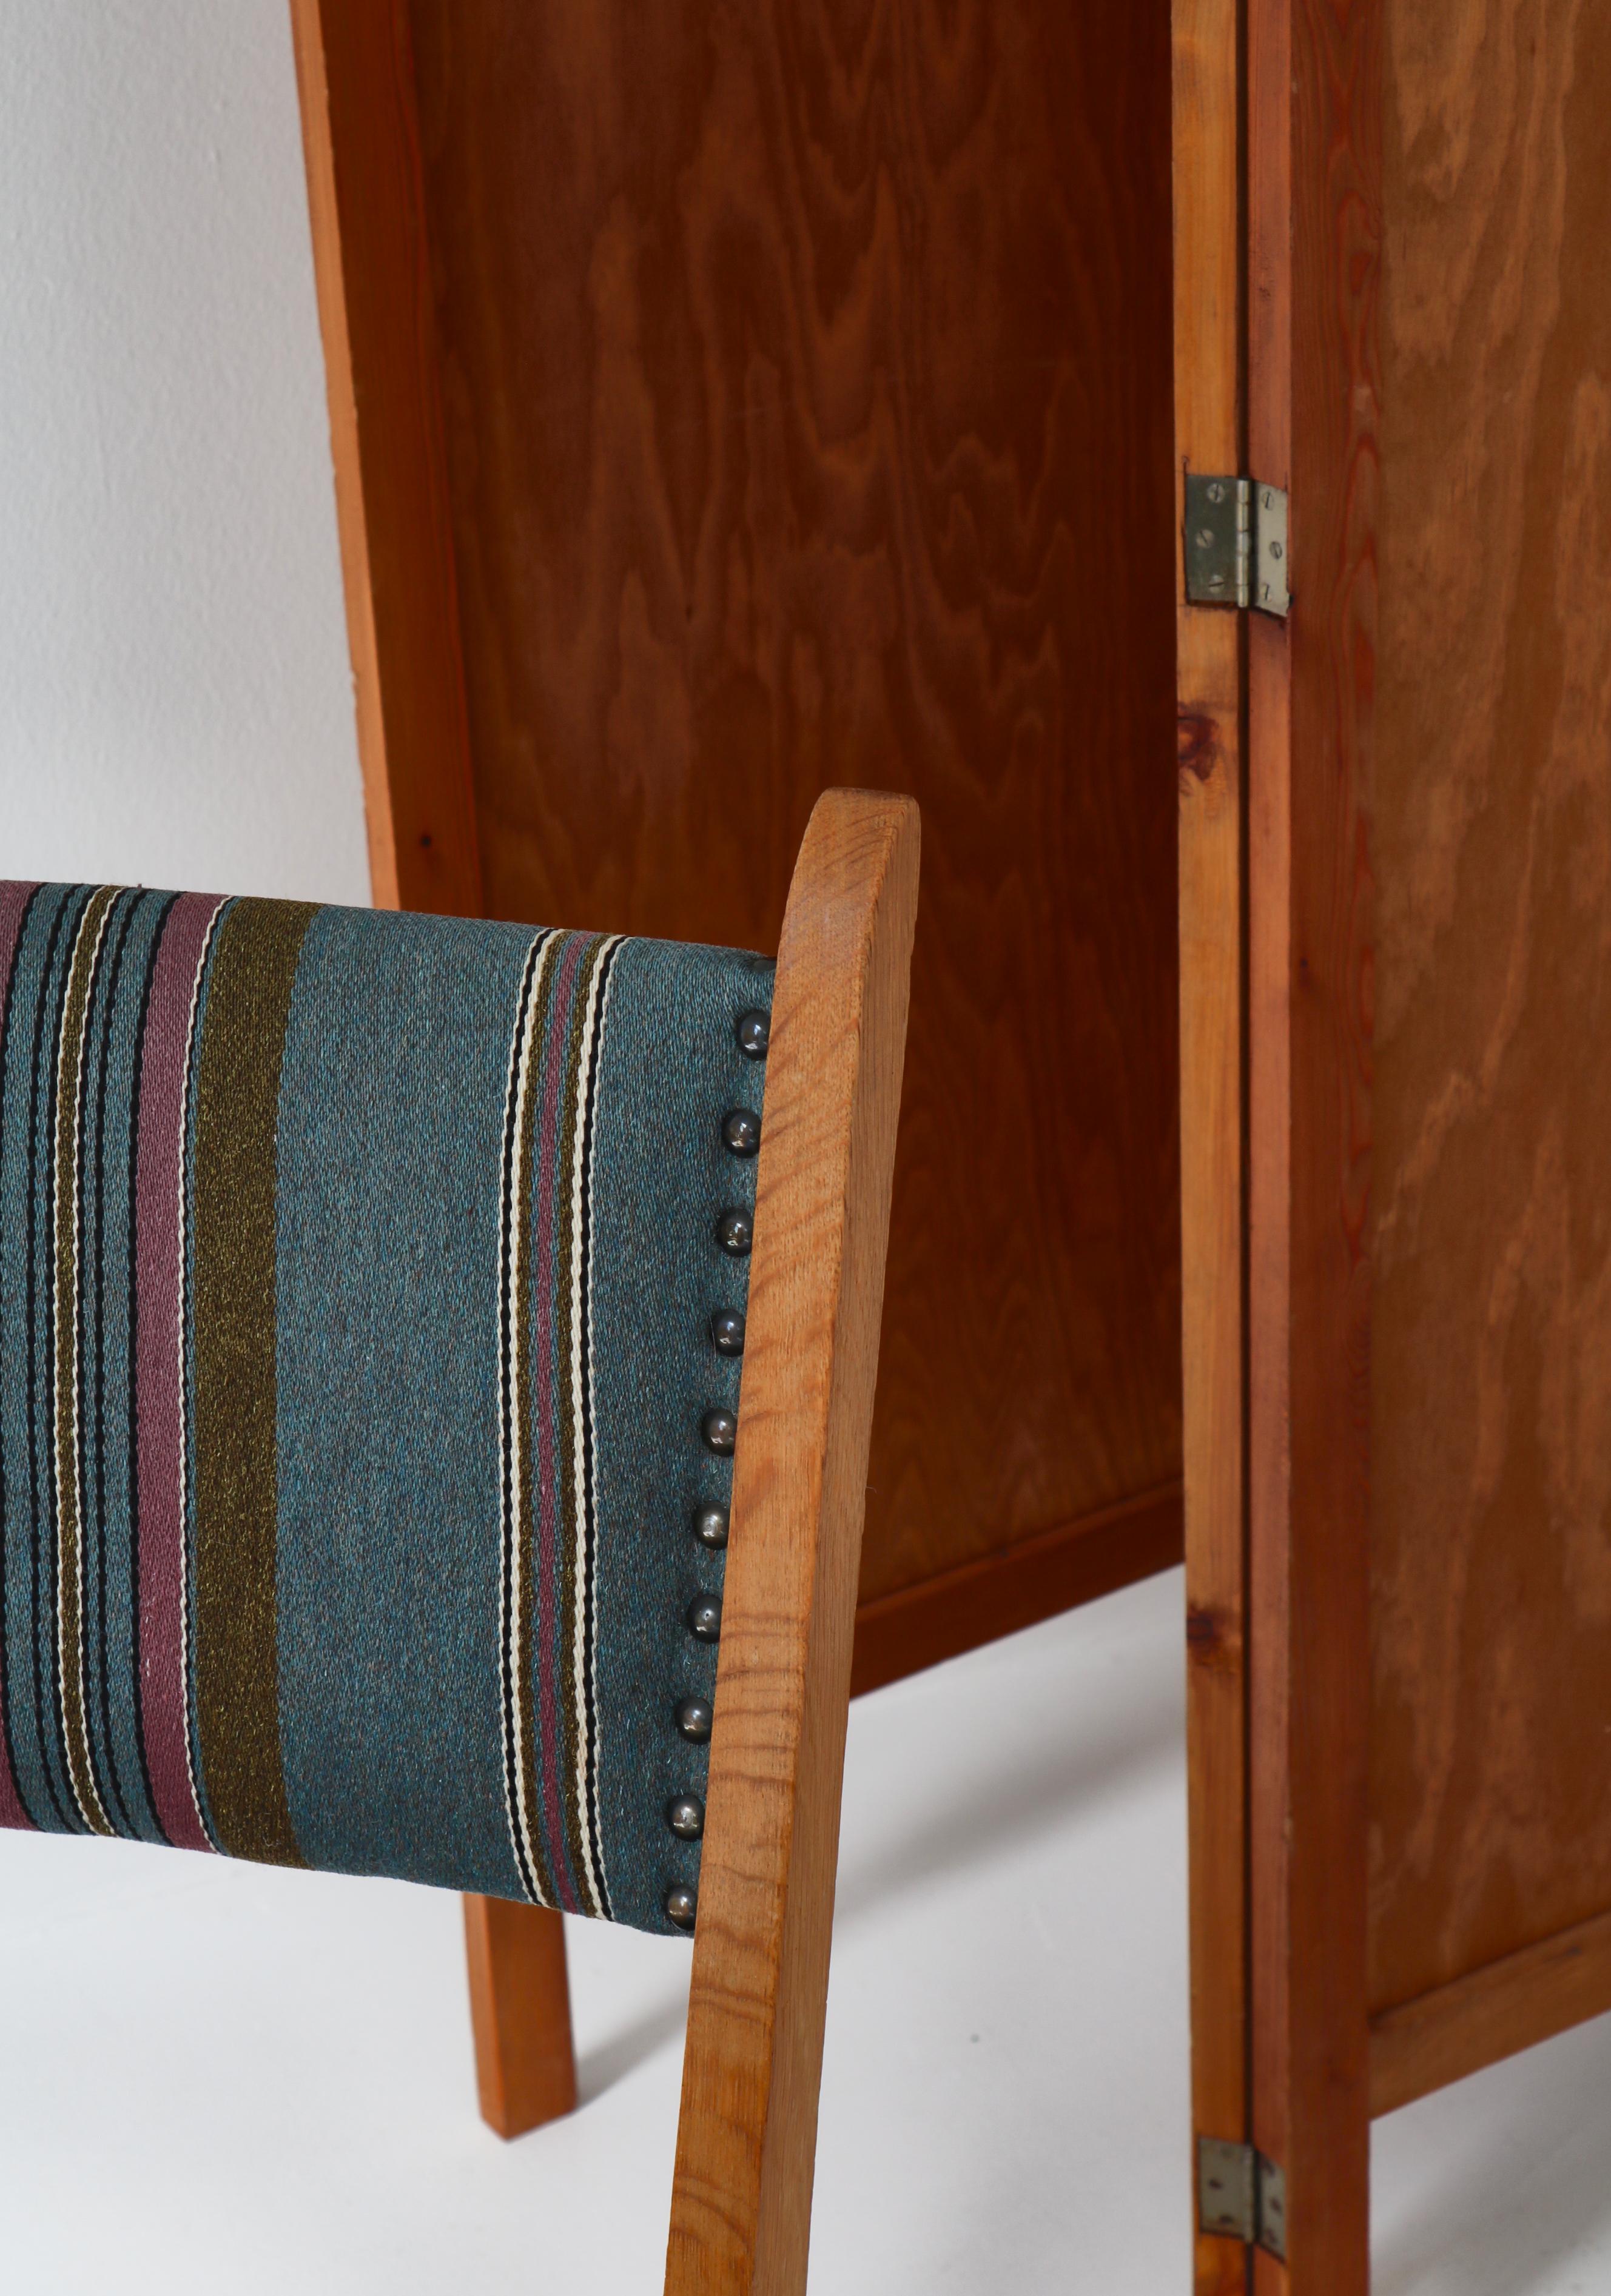 1960s Side Chair in Oak & Wool Fabric by Henry Kjærnulf, Danish Modern For Sale 7